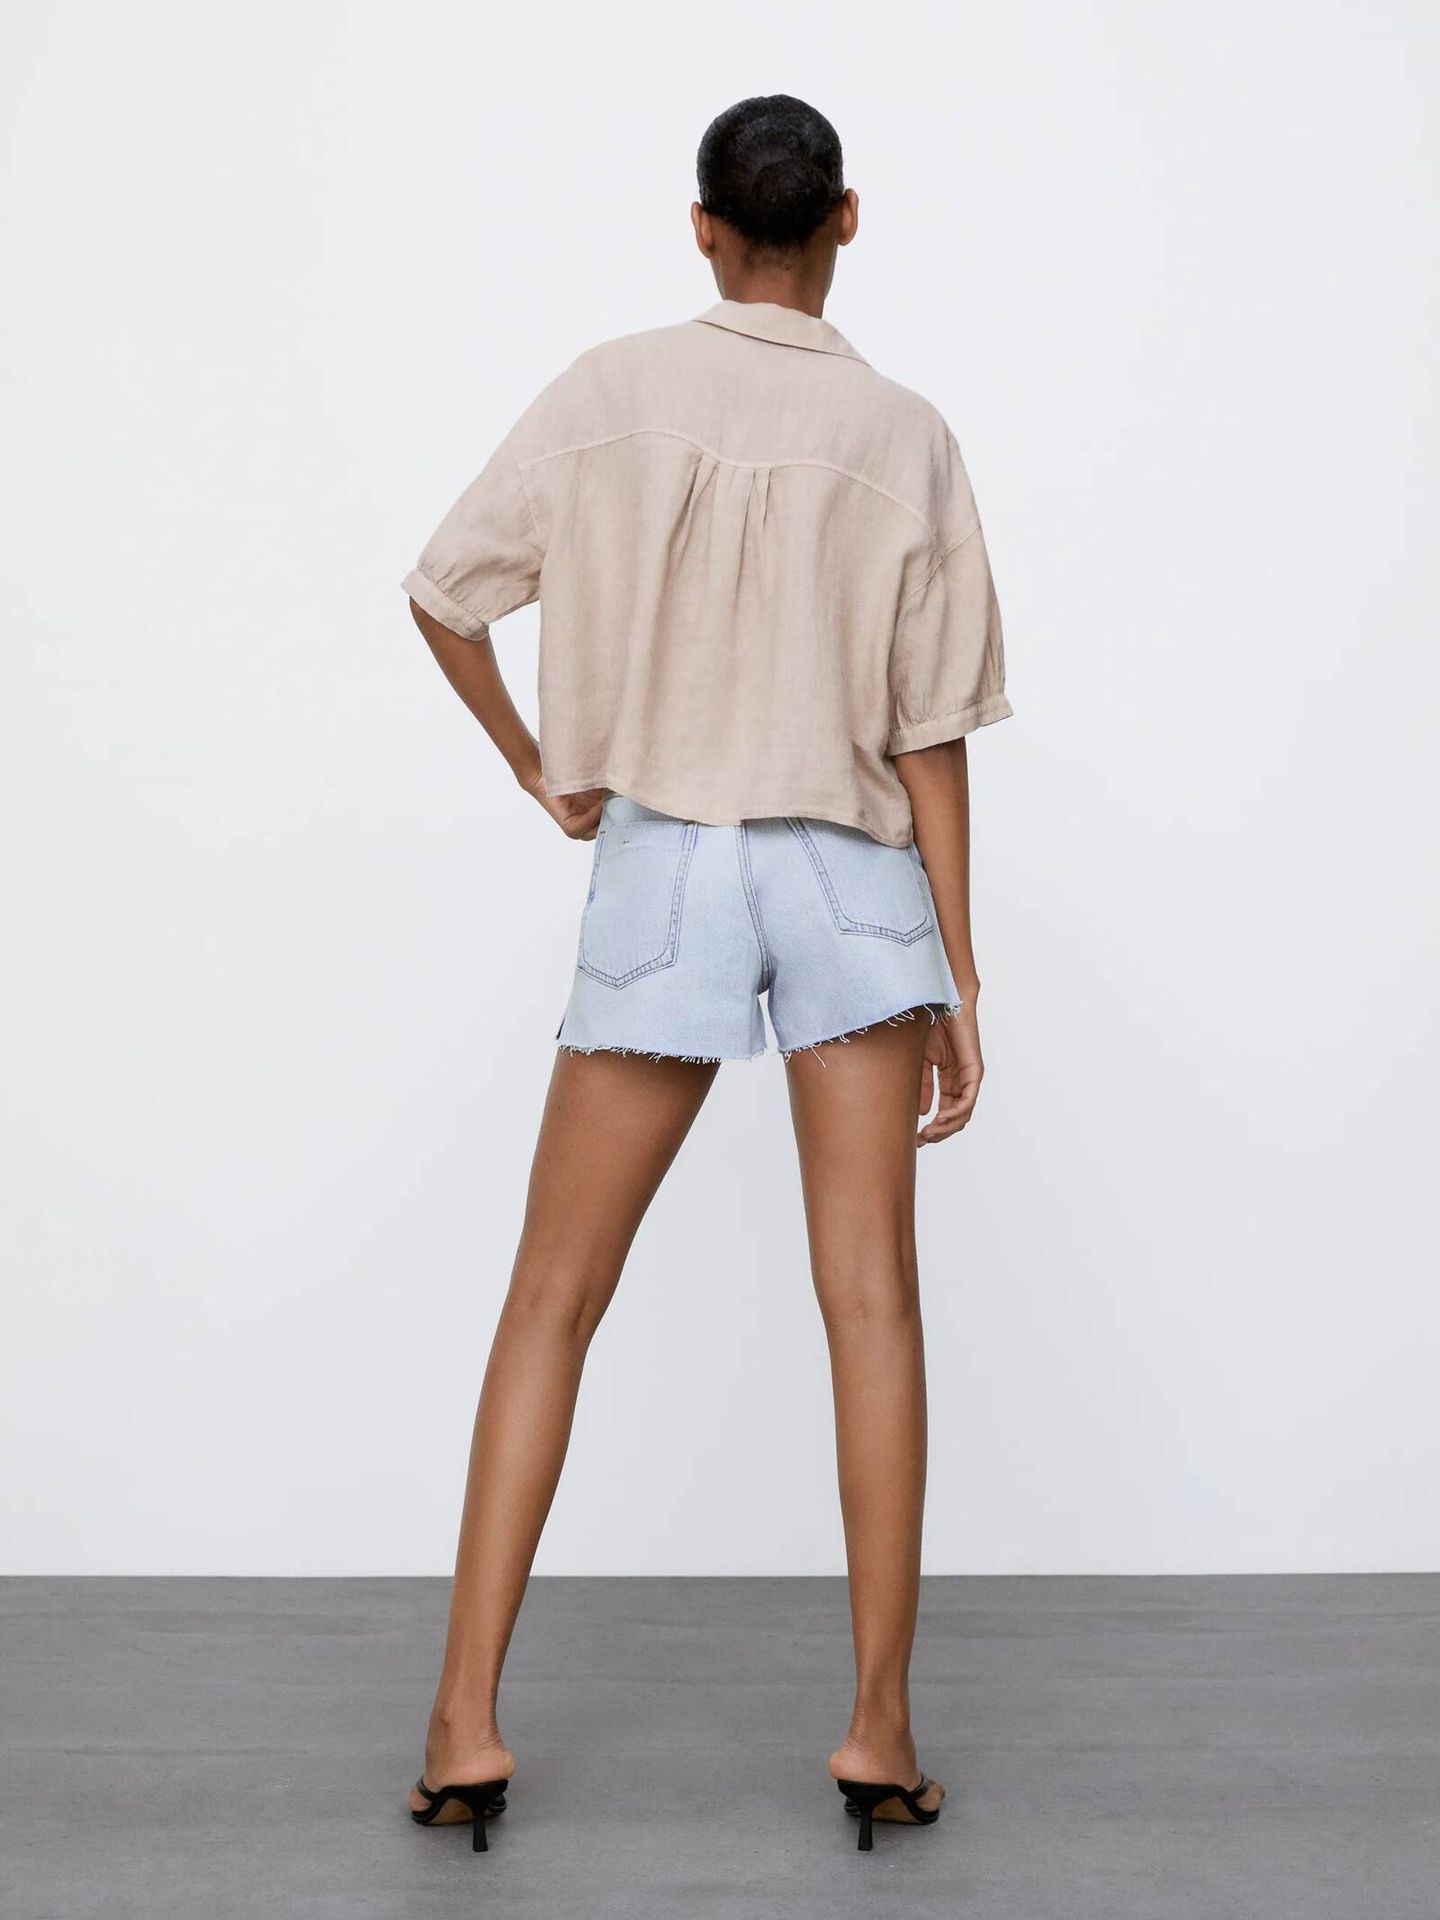 Camisa de lino de tendencia utility de Zara. (Cortesía)